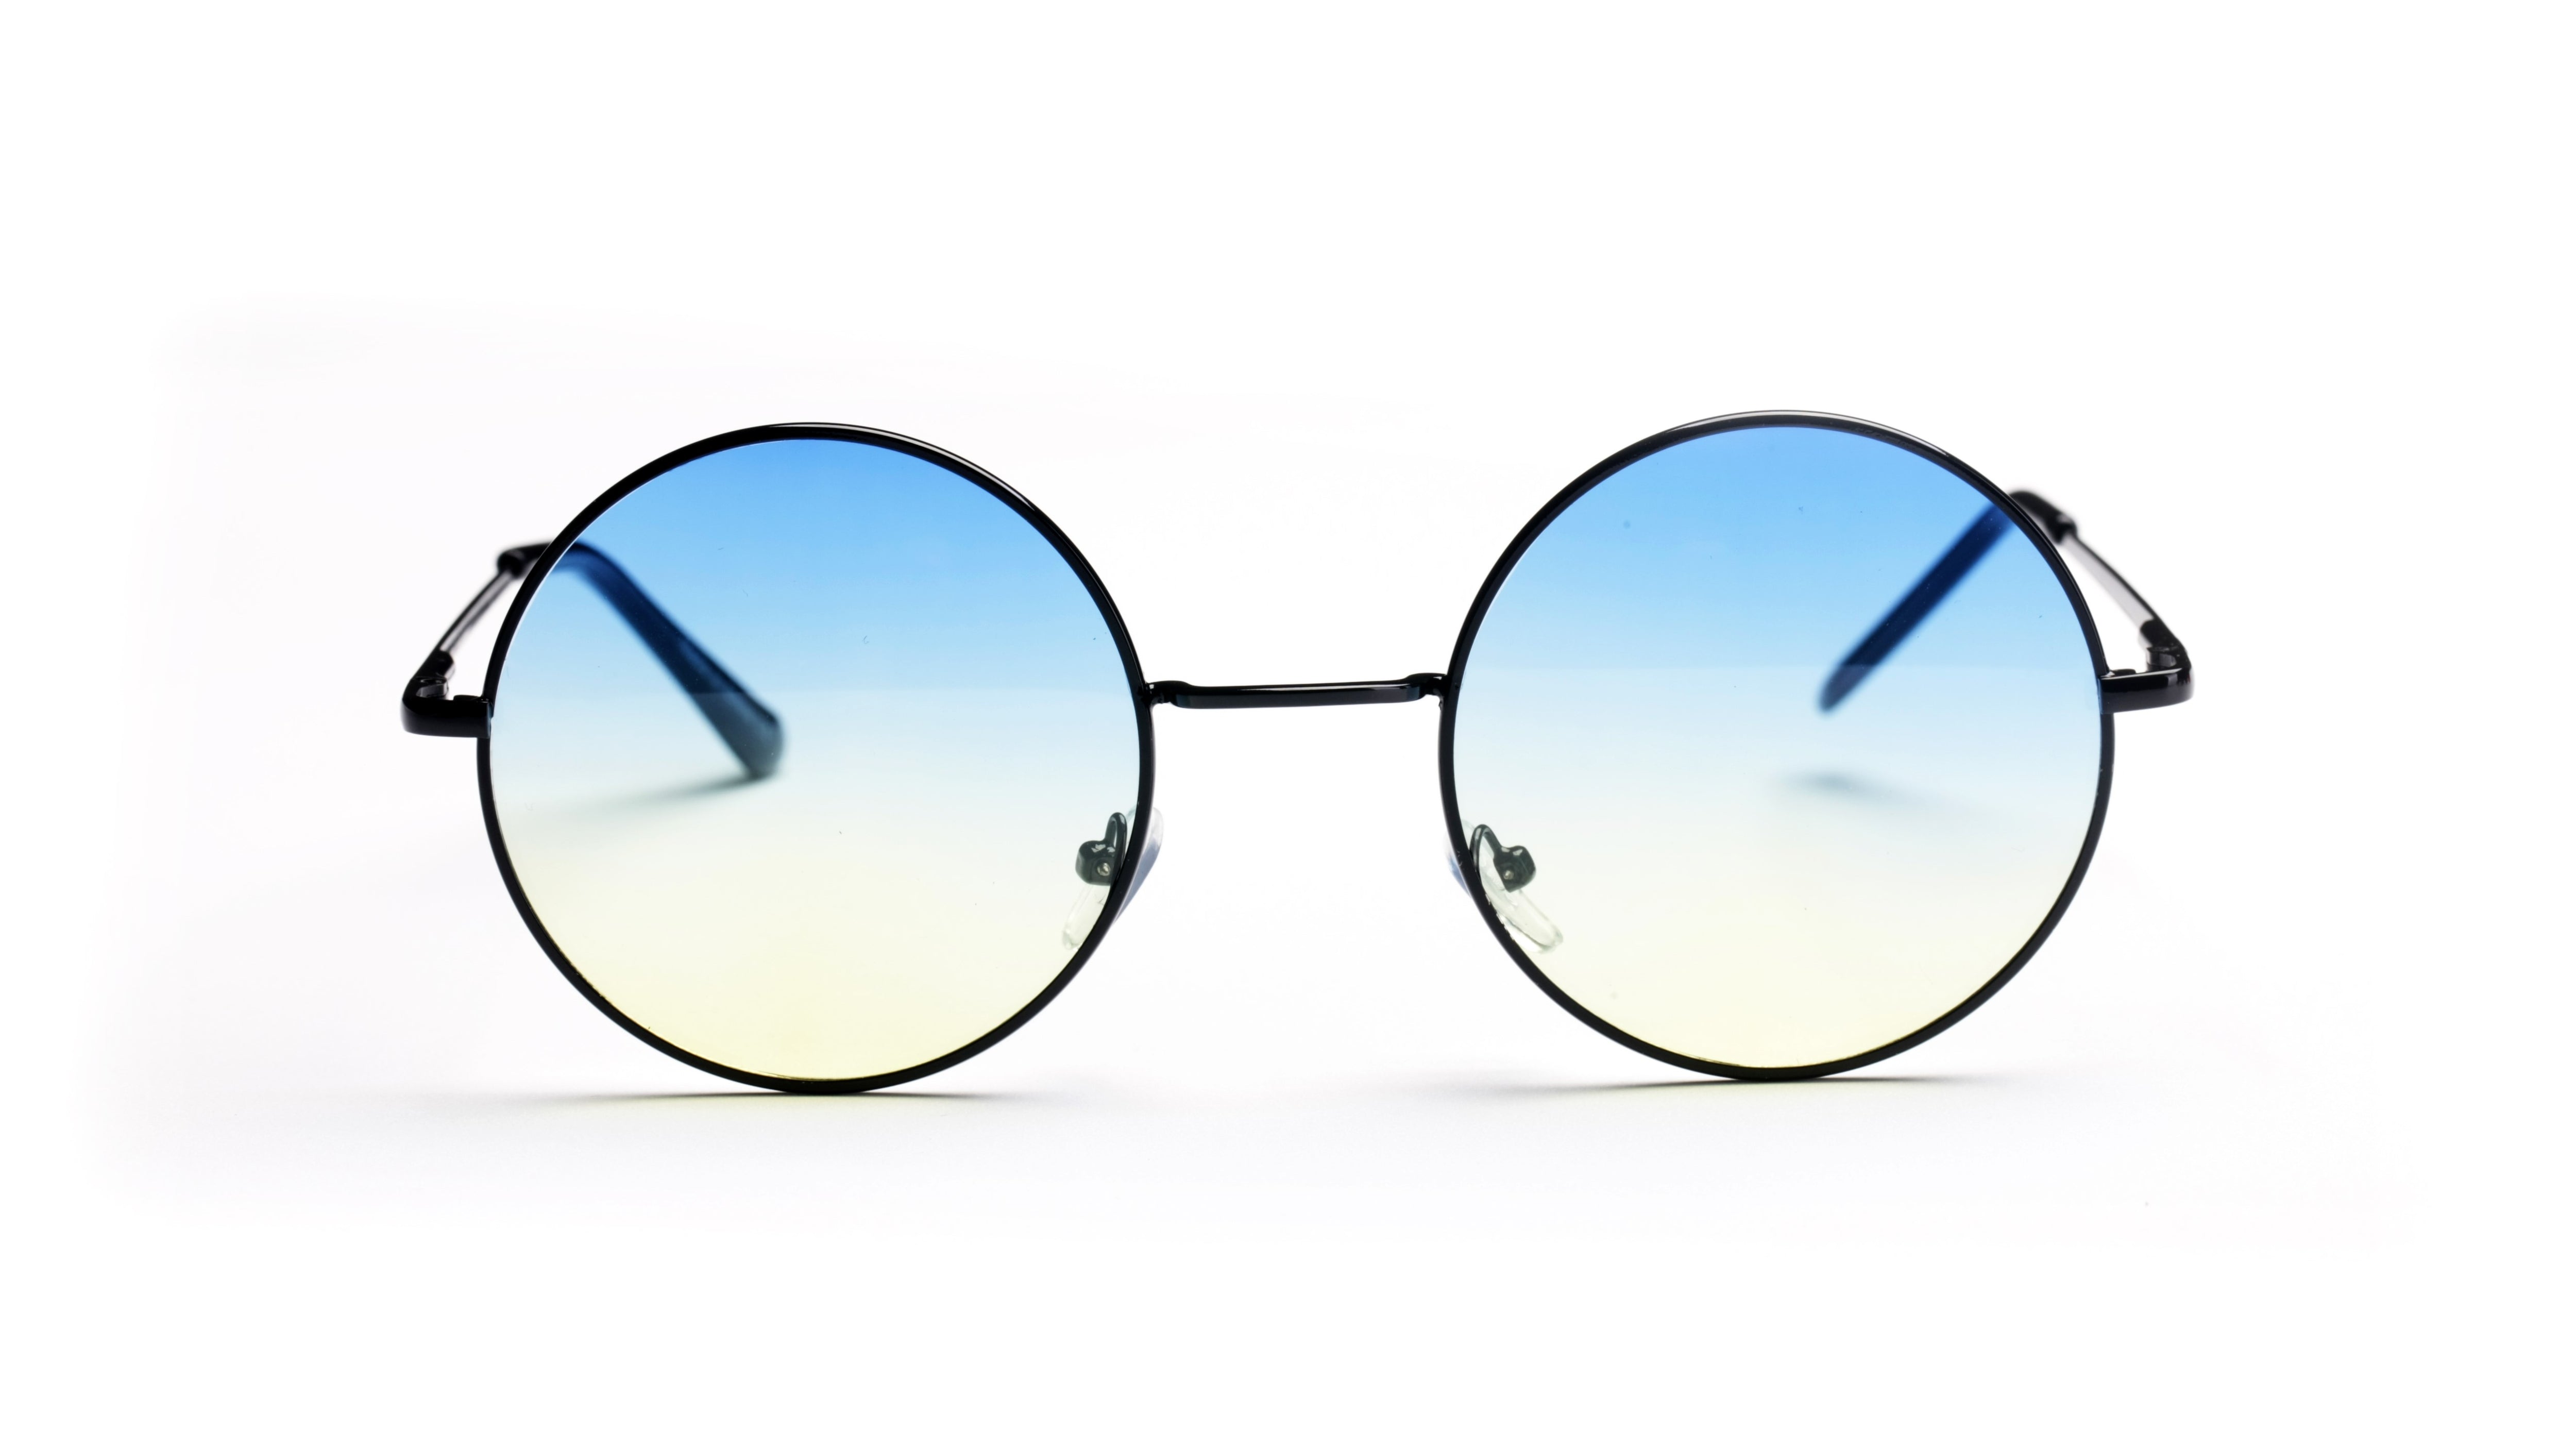 F1003-N - Retro Circle Round Metal Tinted Fashion Sunglasses - Iris Fashion